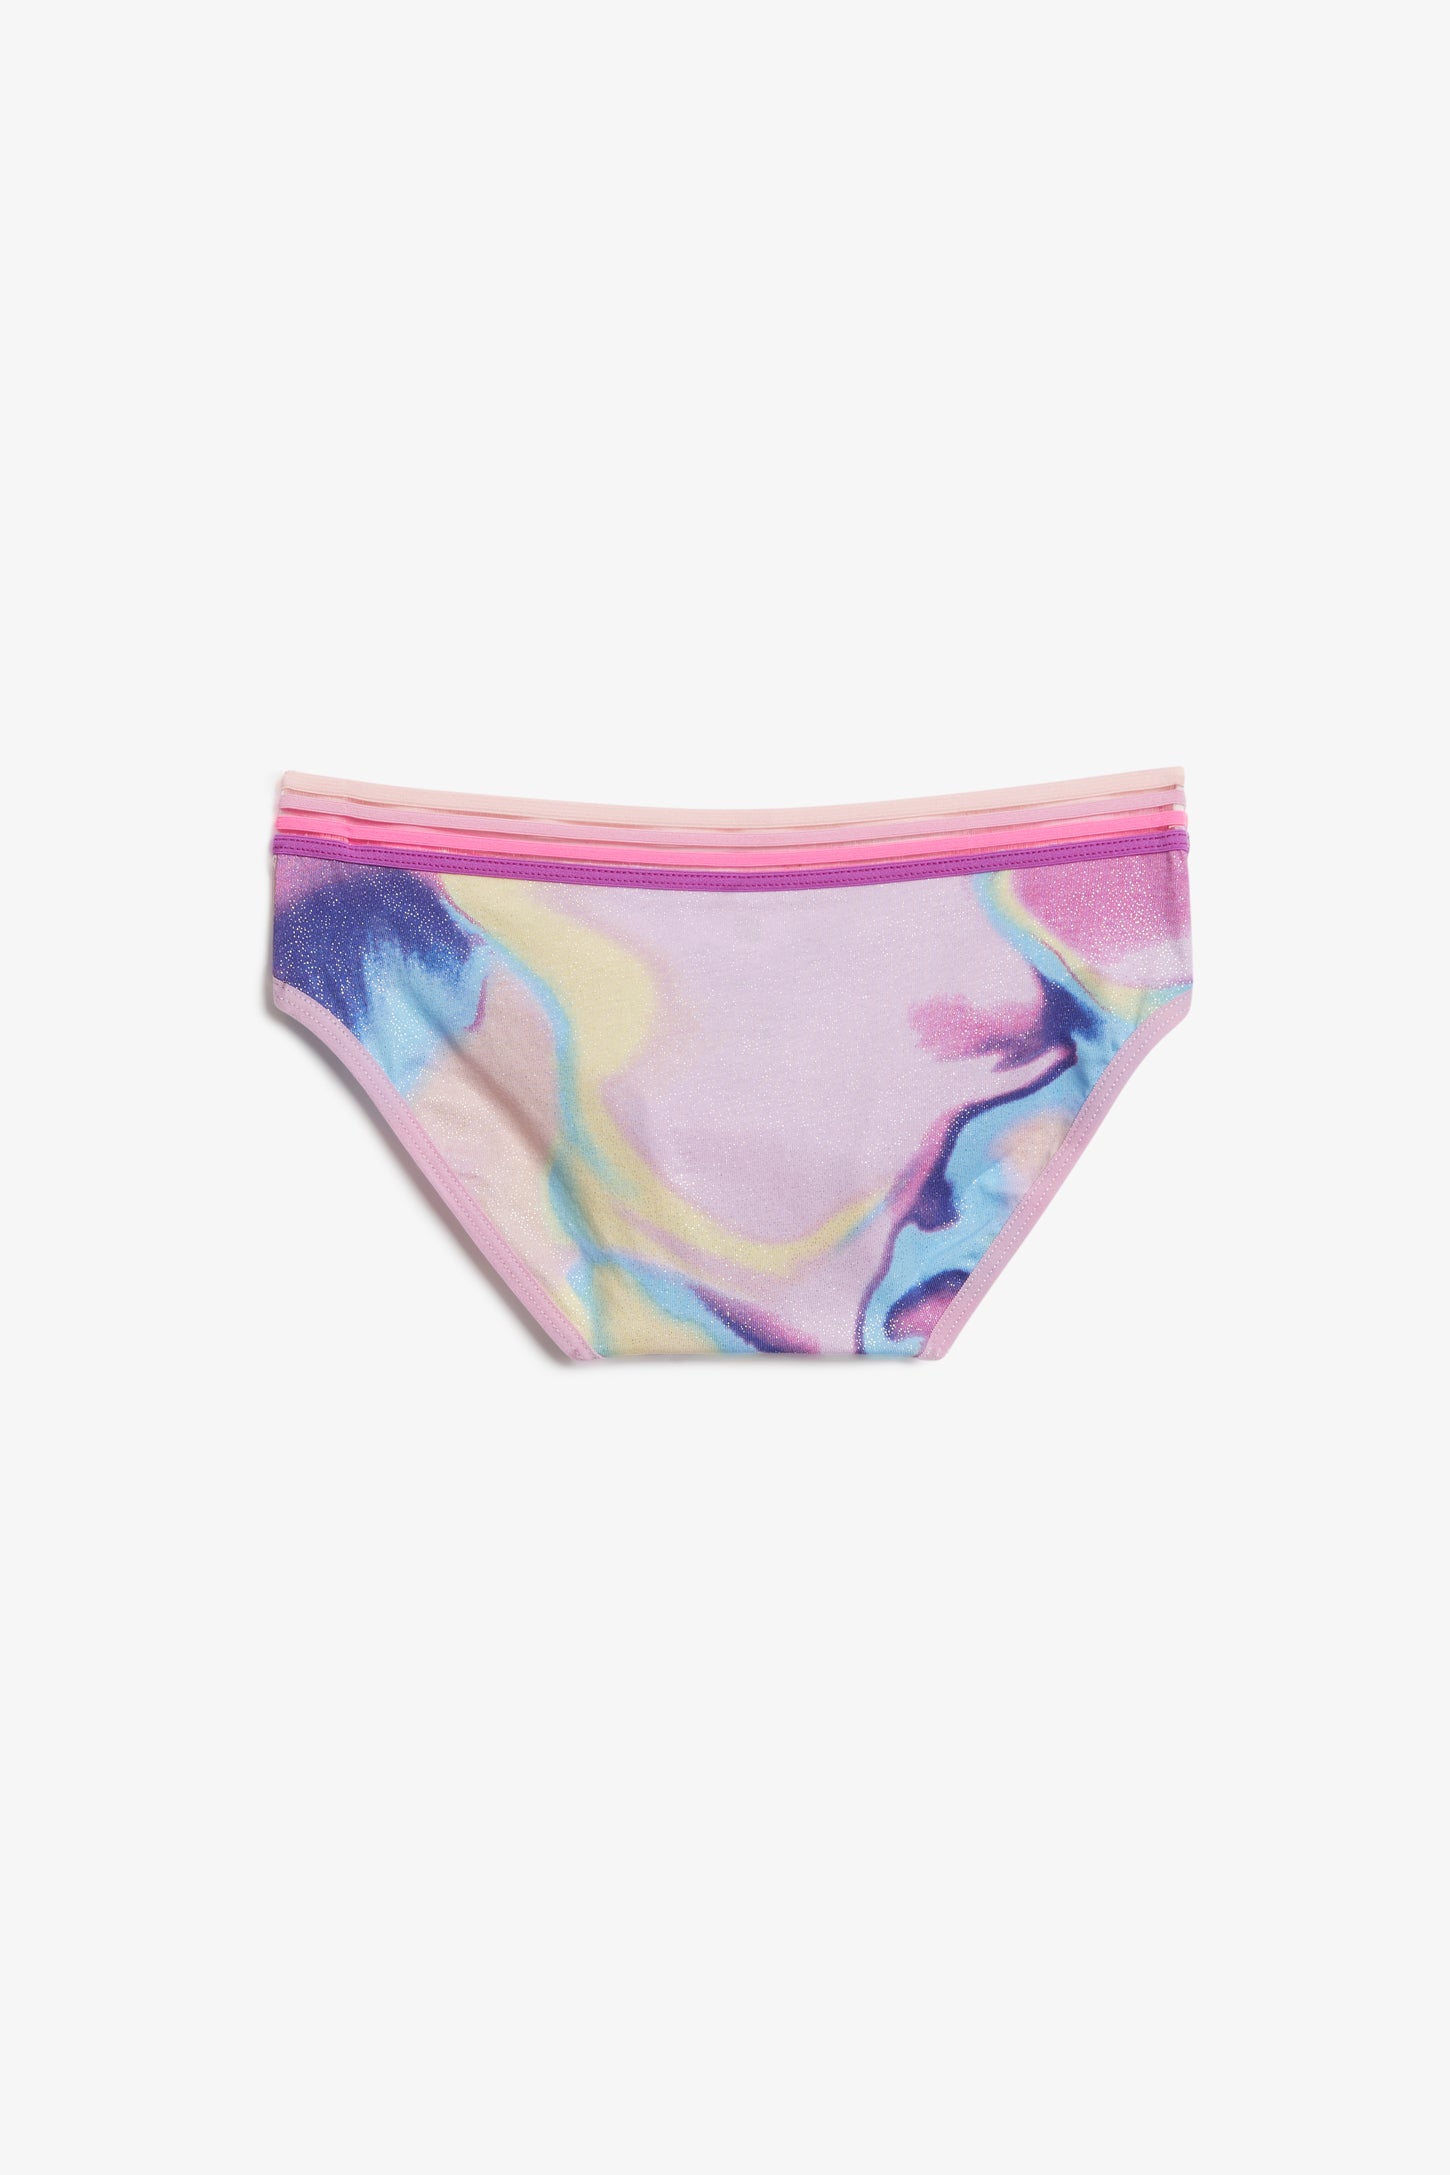 Culotte bikini arc-en-ciel, 3/15$ - Ado fille && JAUNE PALE